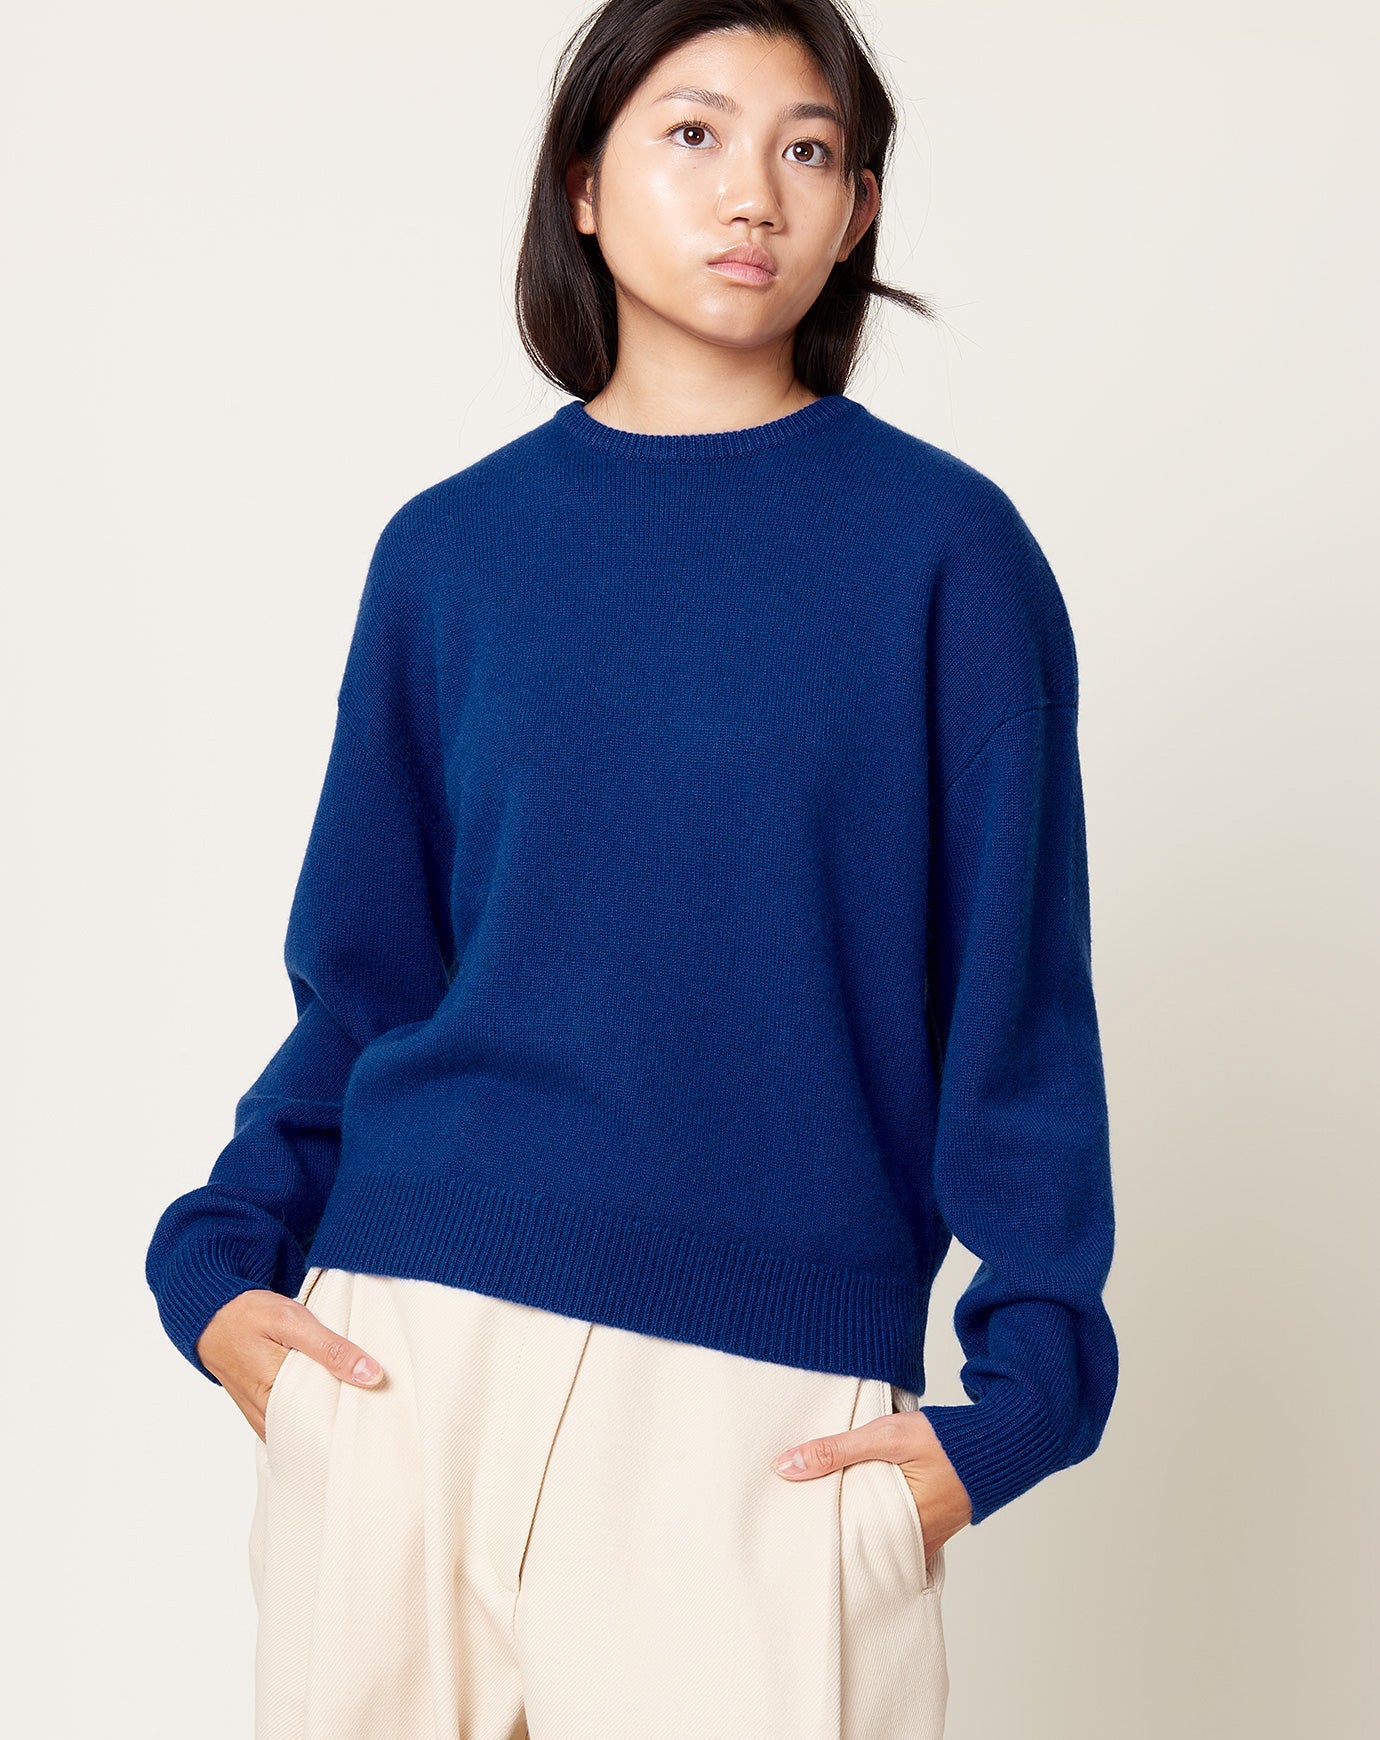 Demylee Artemis Sweater in Blue